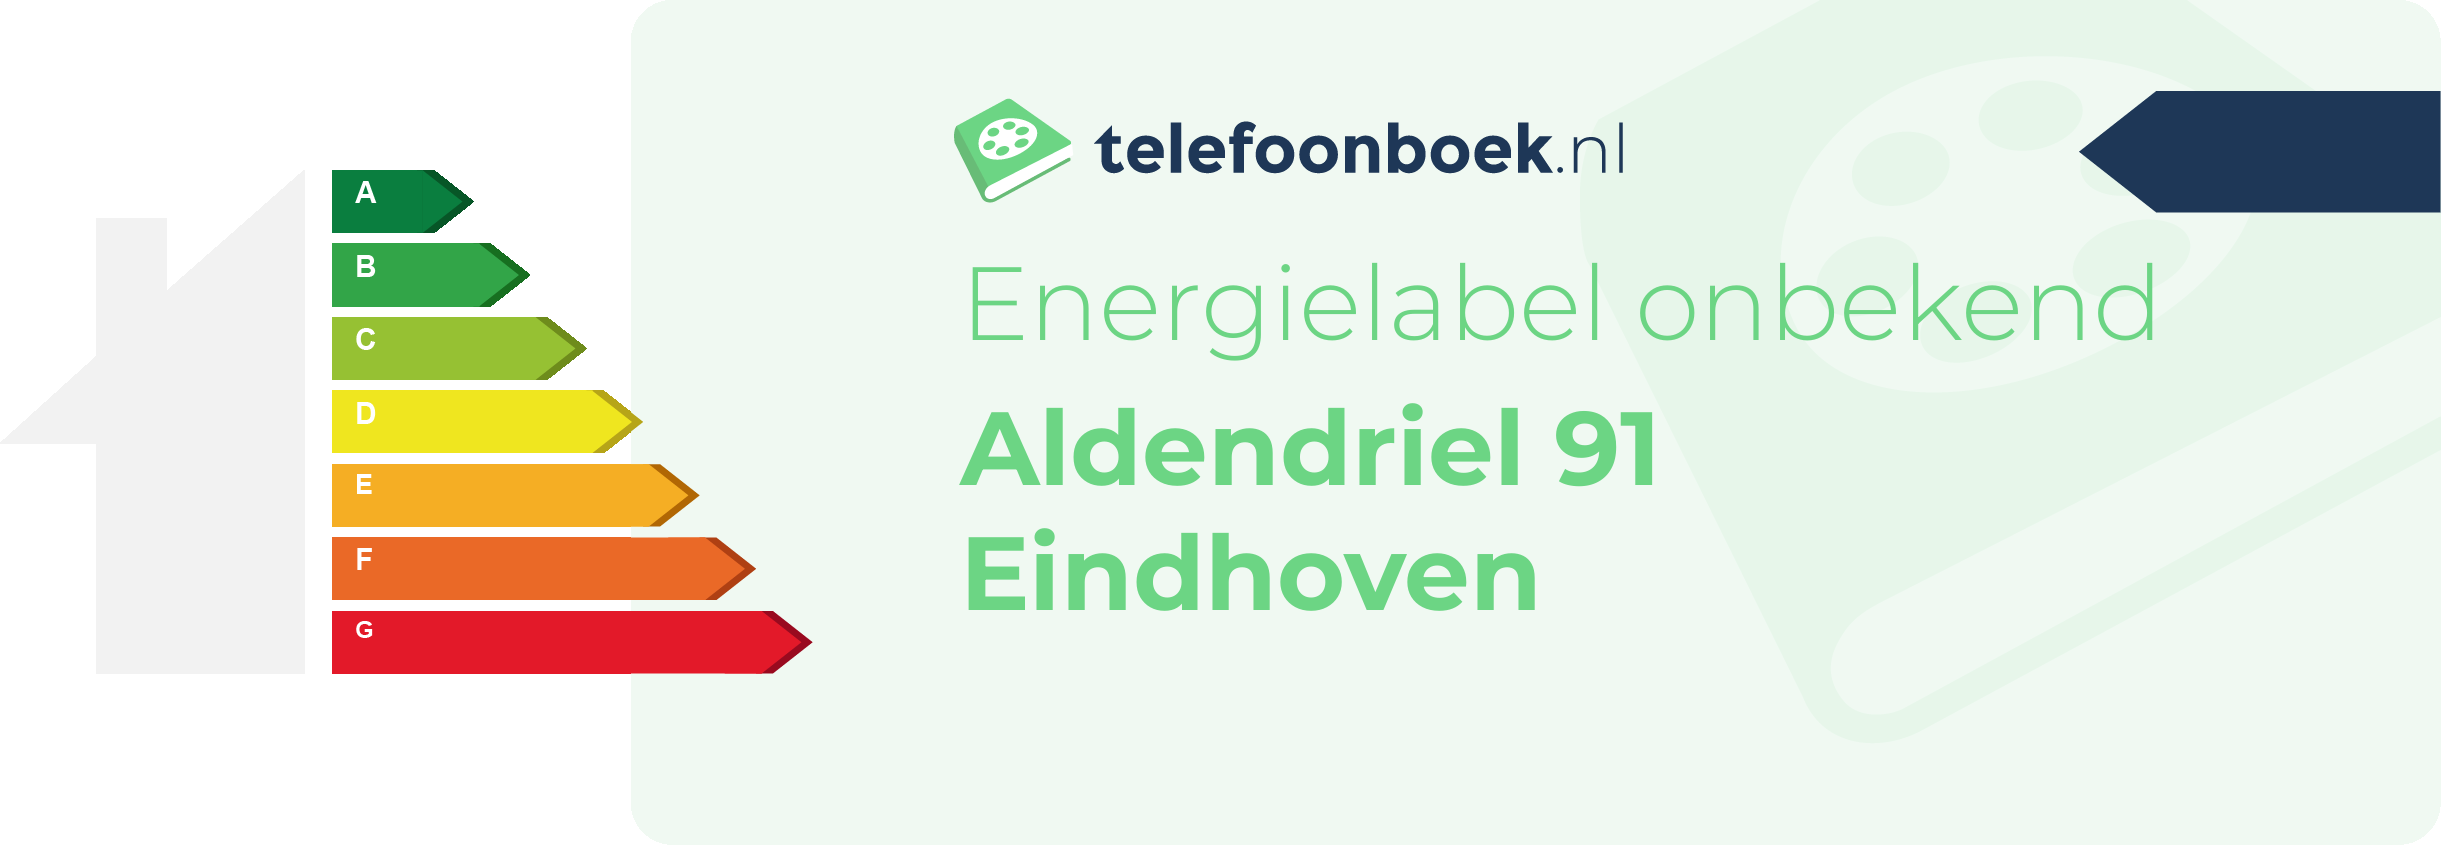 Energielabel Aldendriel 91 Eindhoven